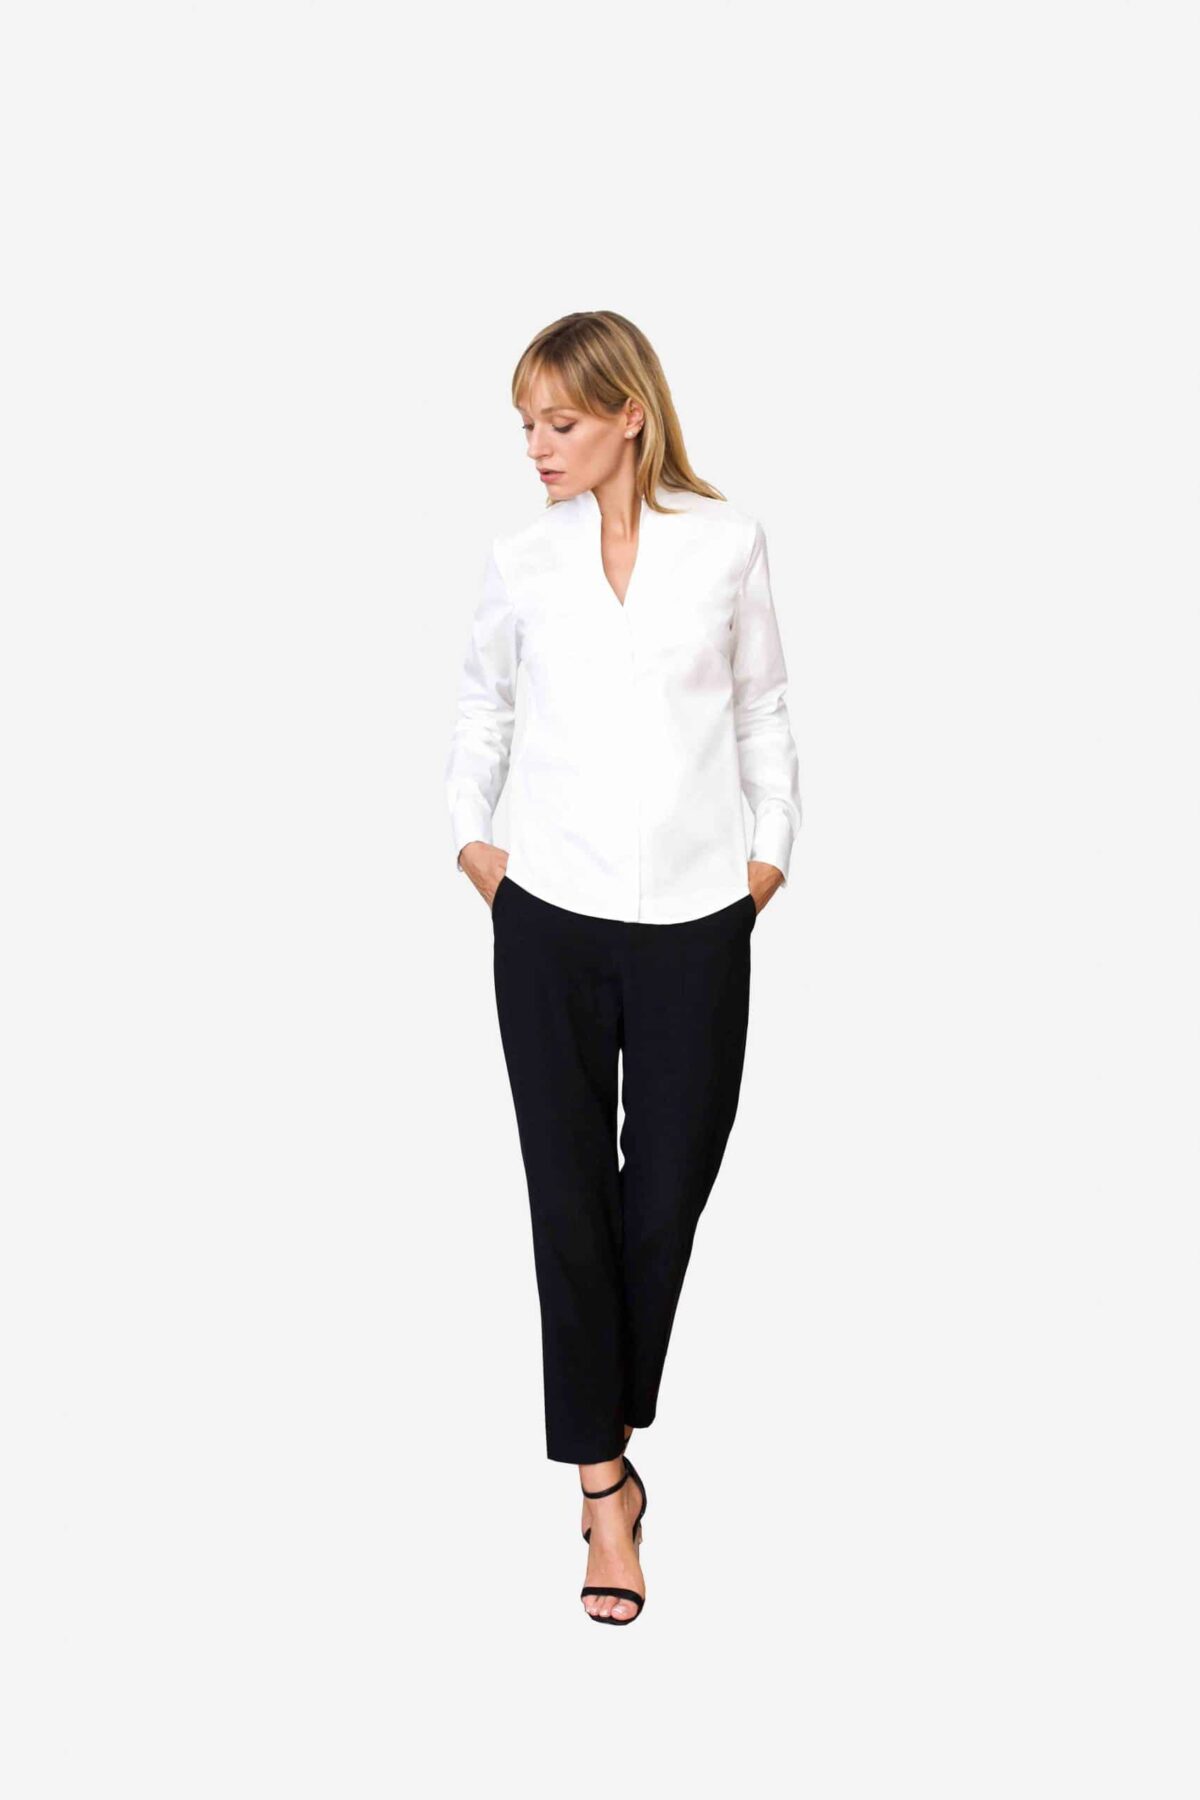 Bluse Sheirlyn von SANOGE. Stilvolle Designer Business Bluse in weiß mit Kelchkragen. Stehkragen. und Umschlagmanschetten.